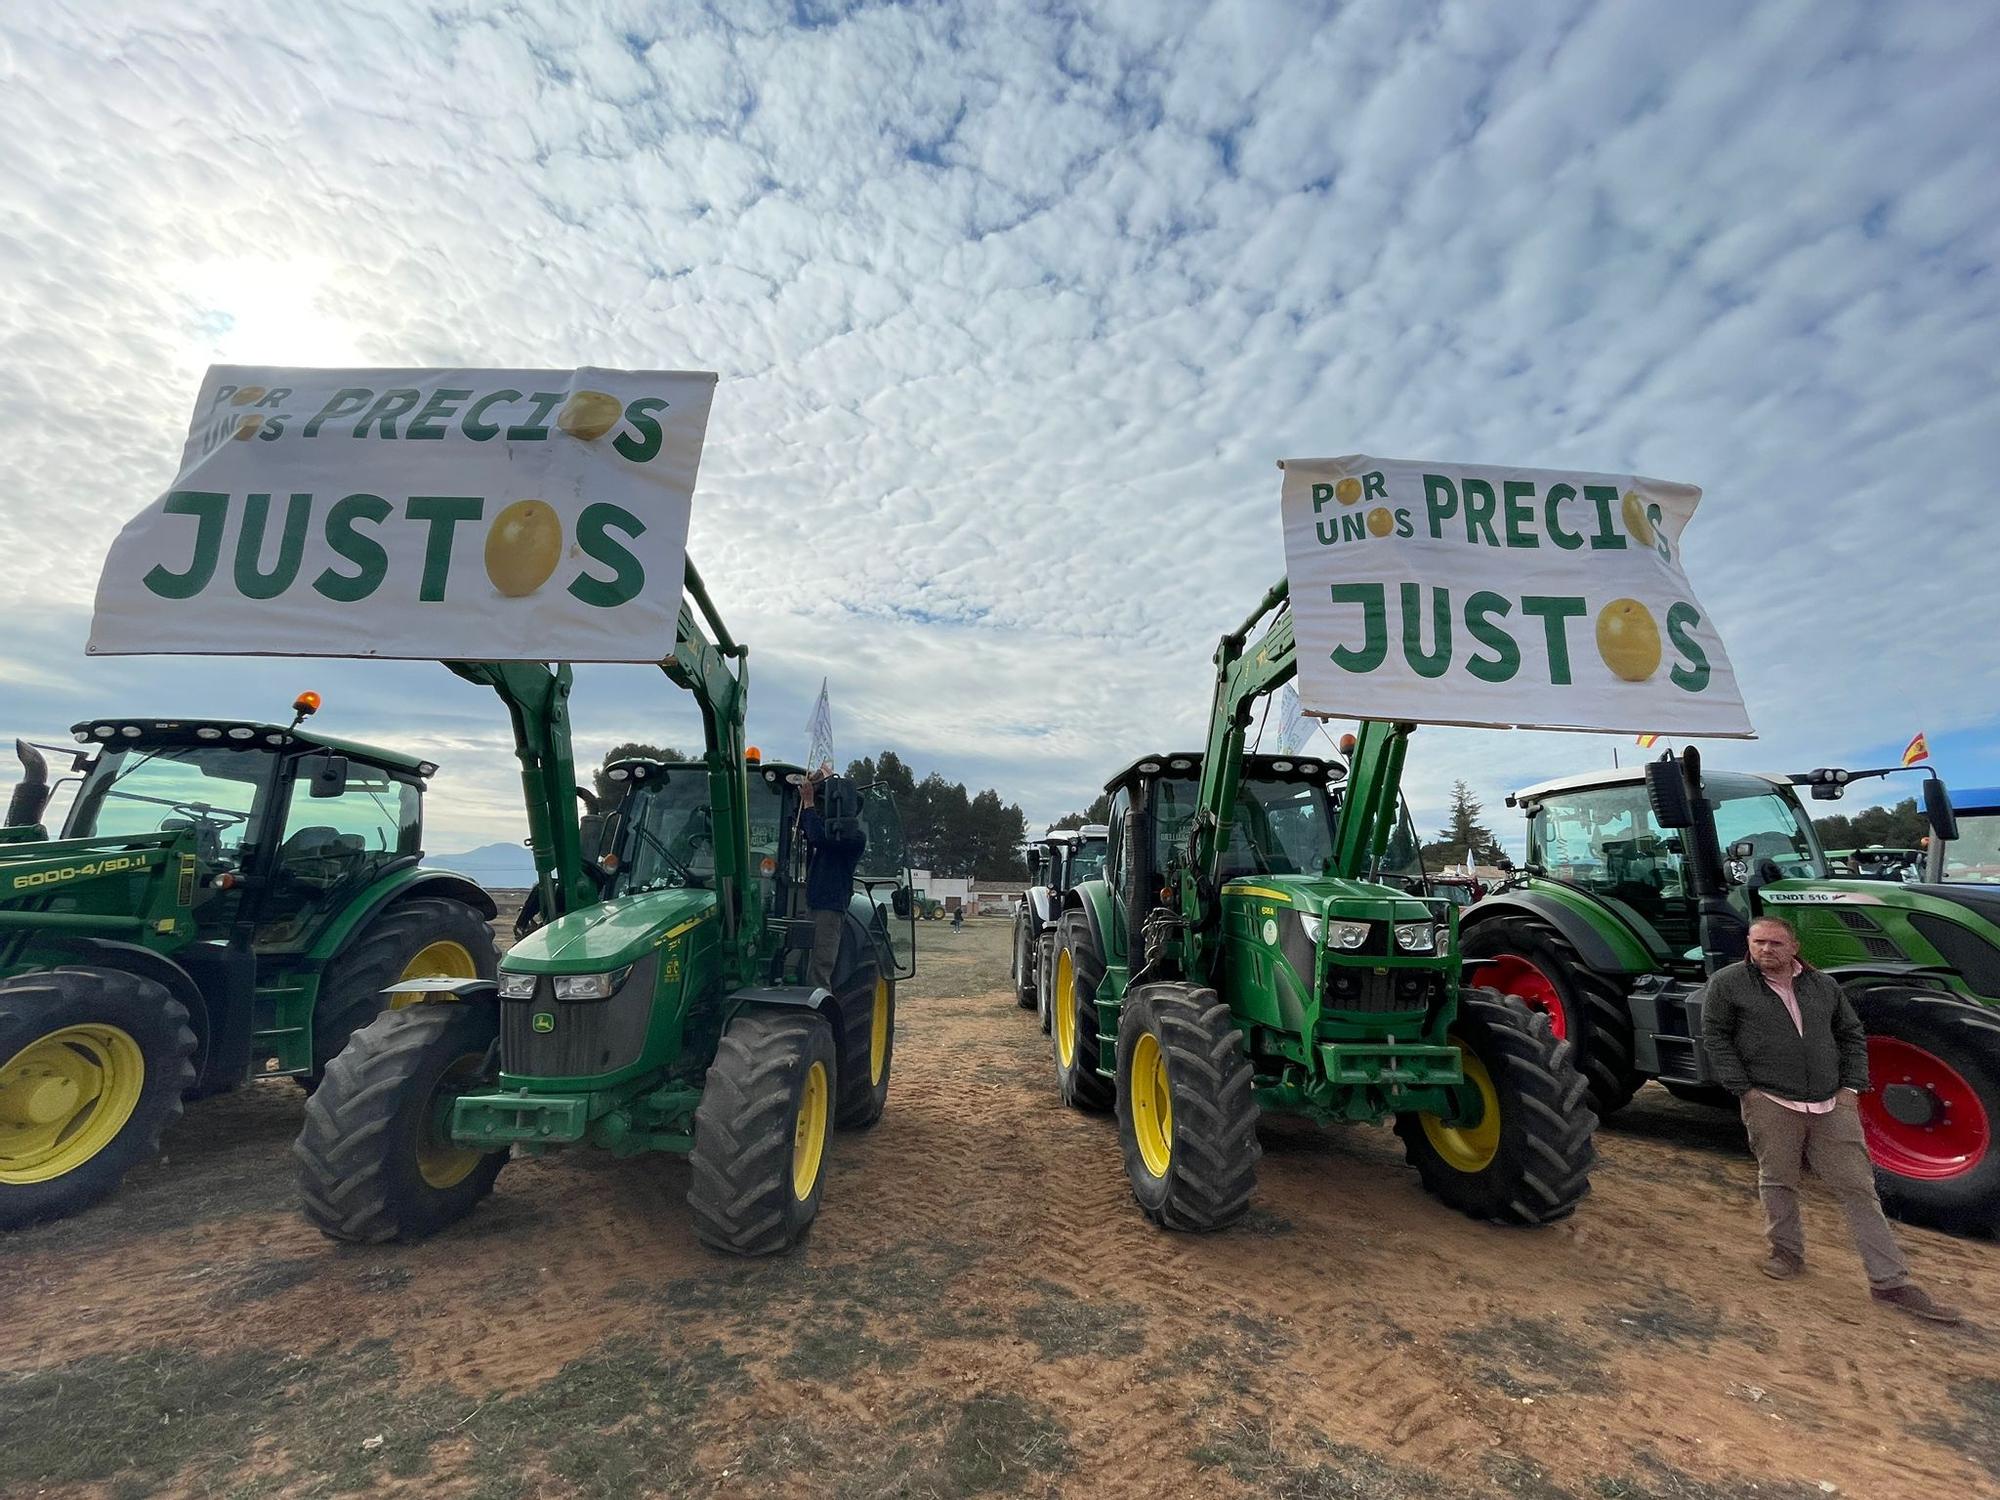 Agricultores se manifiestan con sus tractores en Antequera contra los bajos precios